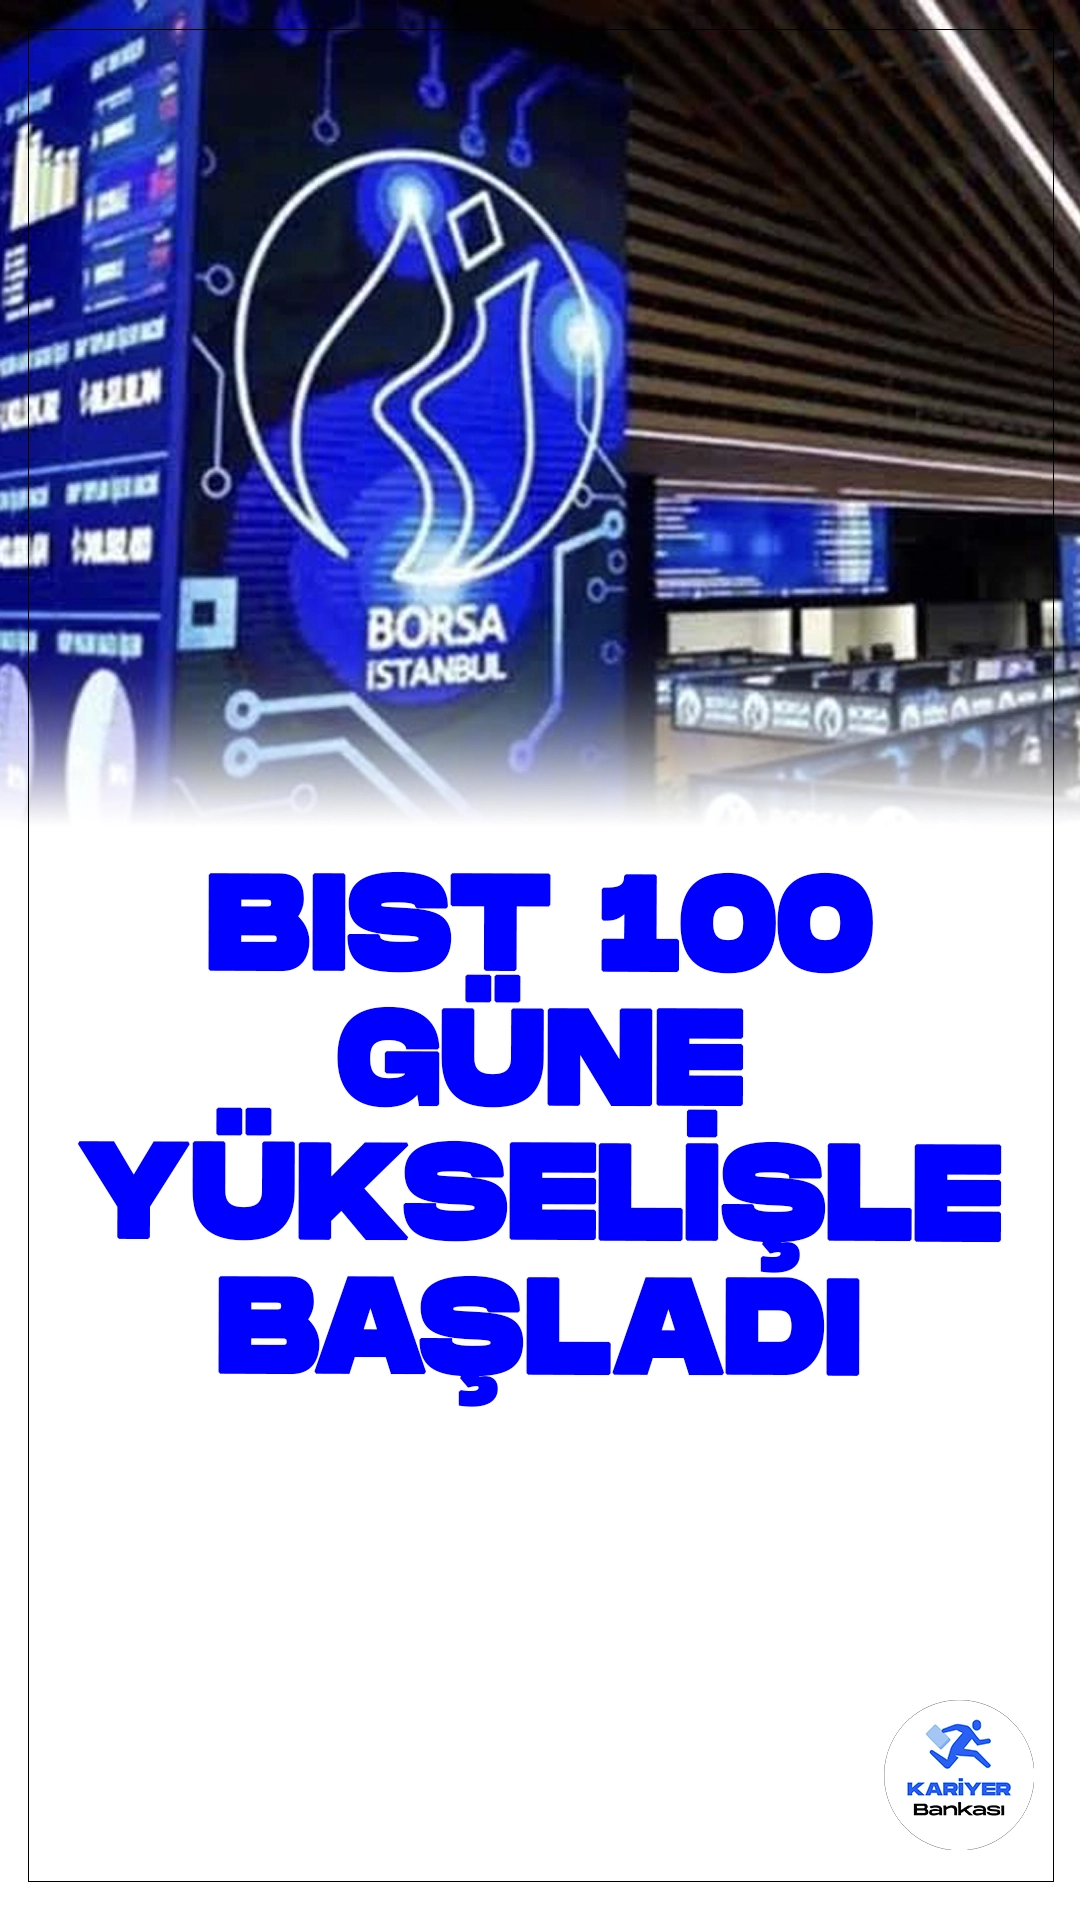 BIST 100 Endeksi Güne Yükselişle Başlangıç Yaptı.Borsa İstanbul'da BIST 100 endeksi, günü yüzde 0,42'lik bir artışla 10.098,61 puanla açtı. Endeks, önceki kapanışa göre 42,63 puanlık bir yükseliş kaydederek bu seviyeye ulaştı.